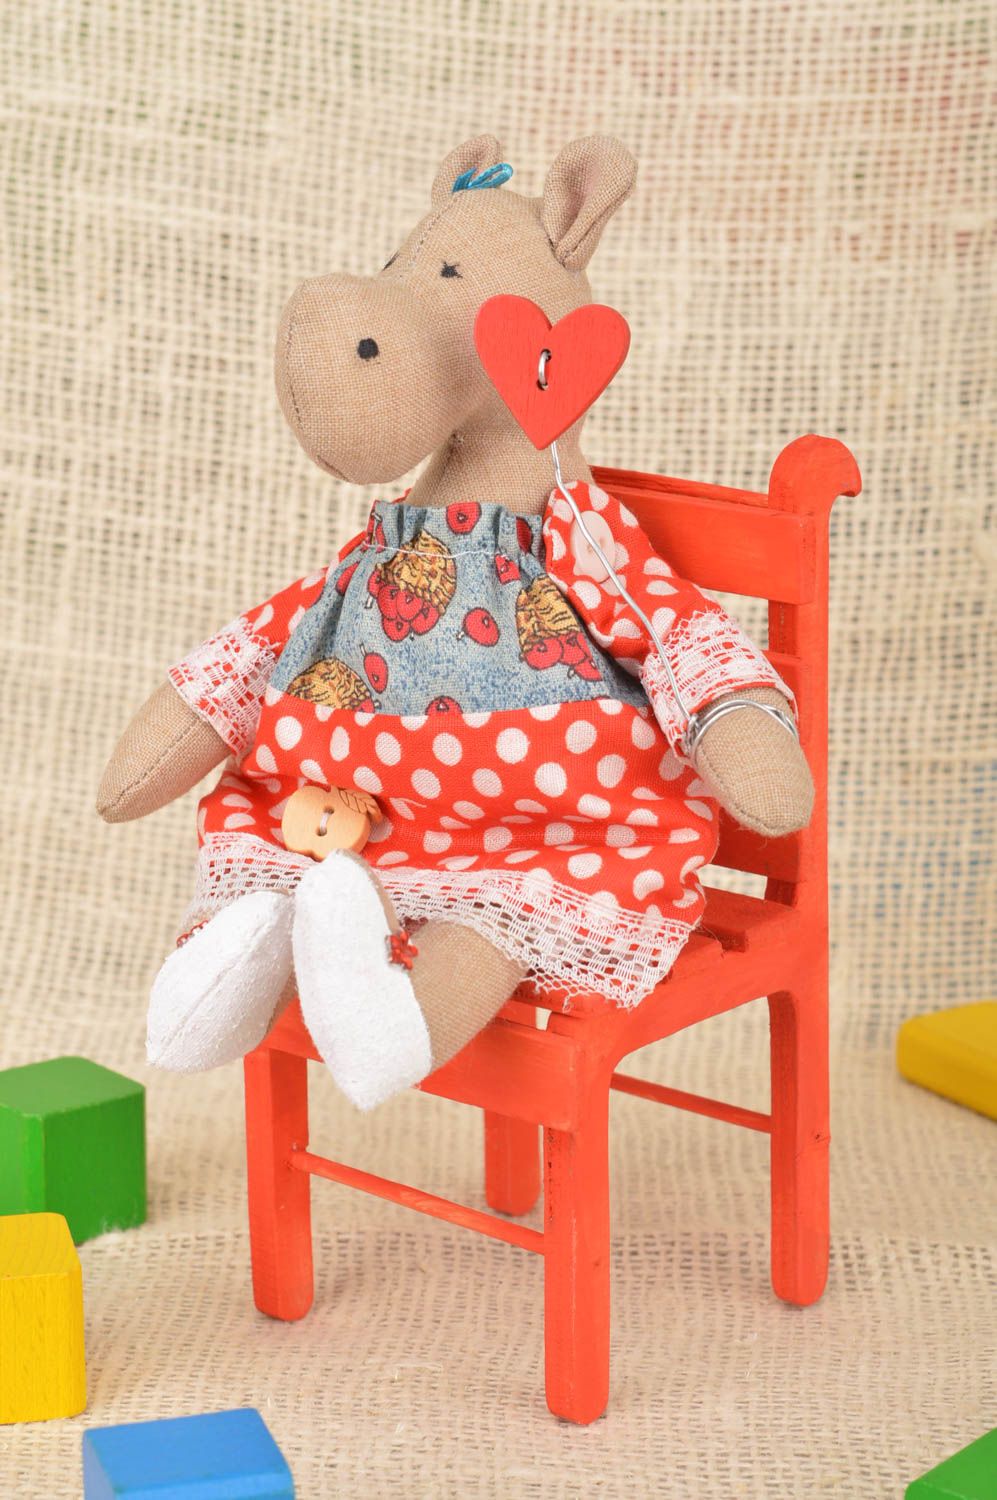 Интерьерная игрушка из хлопка ручной работы Бегемотик в платье на красном стуле фото 1